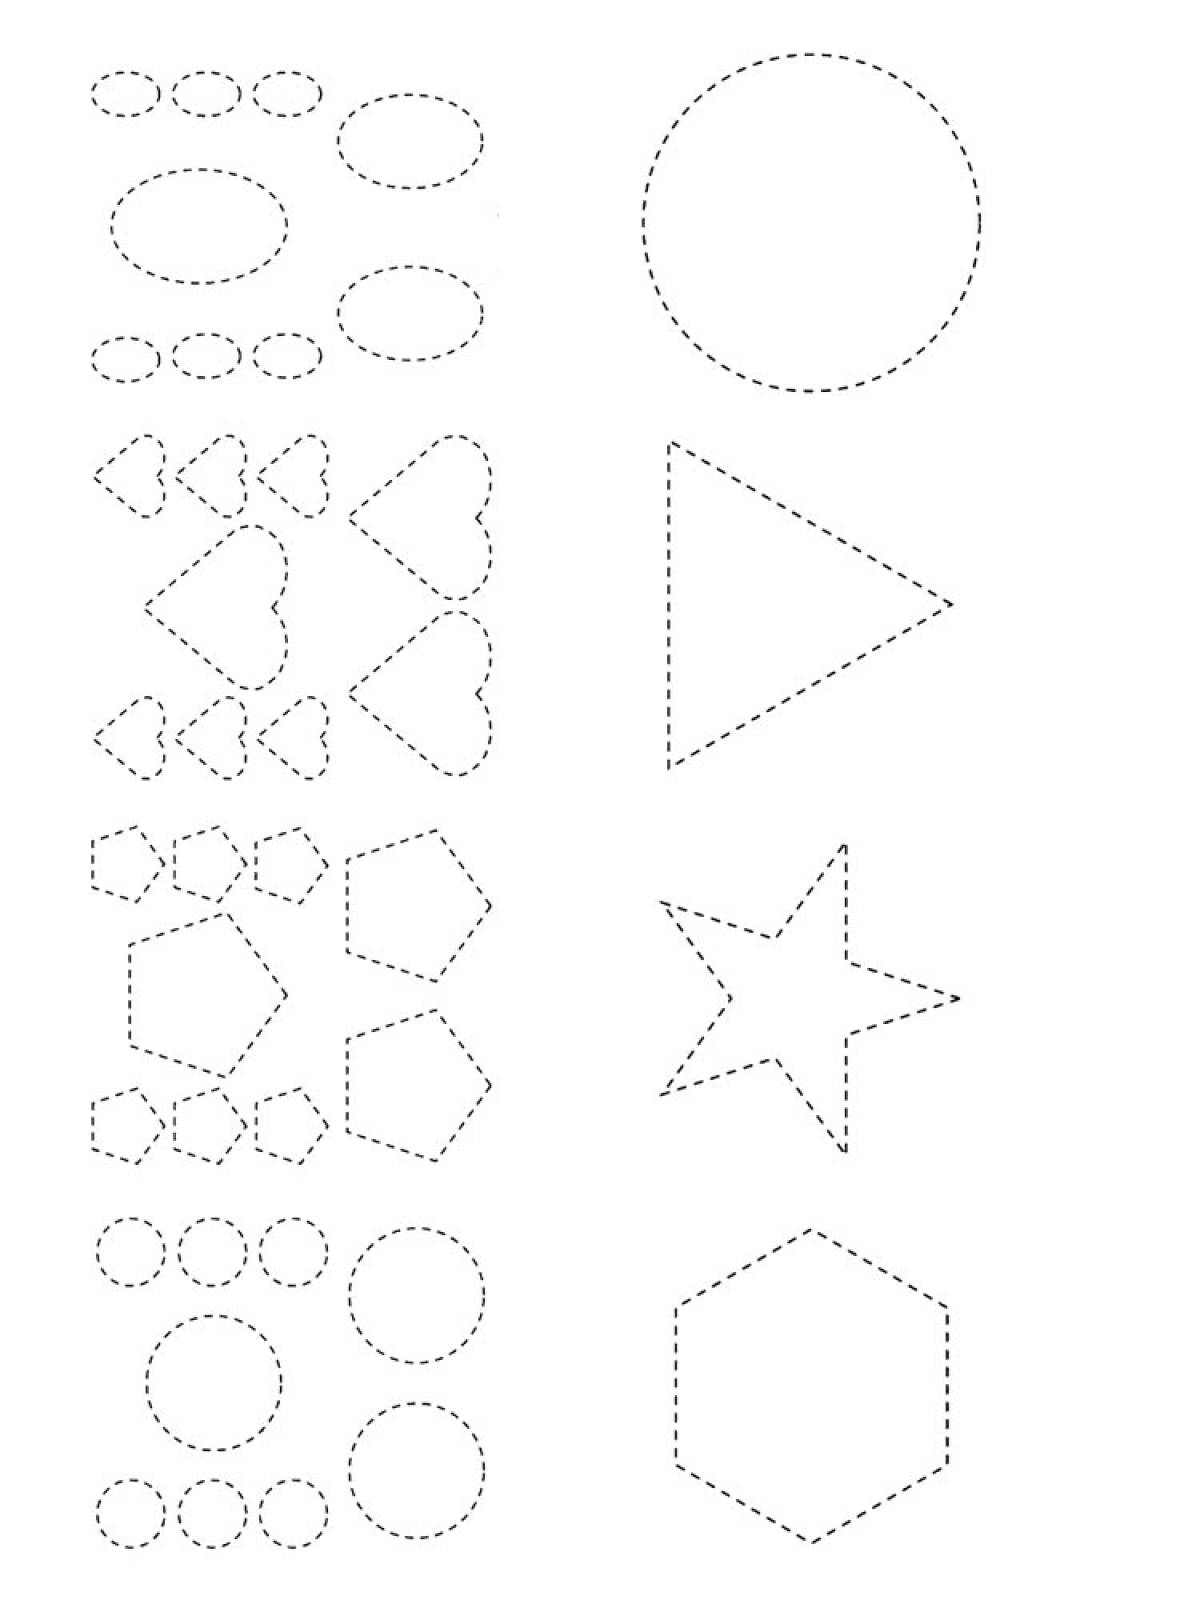 Geometric shapes 8